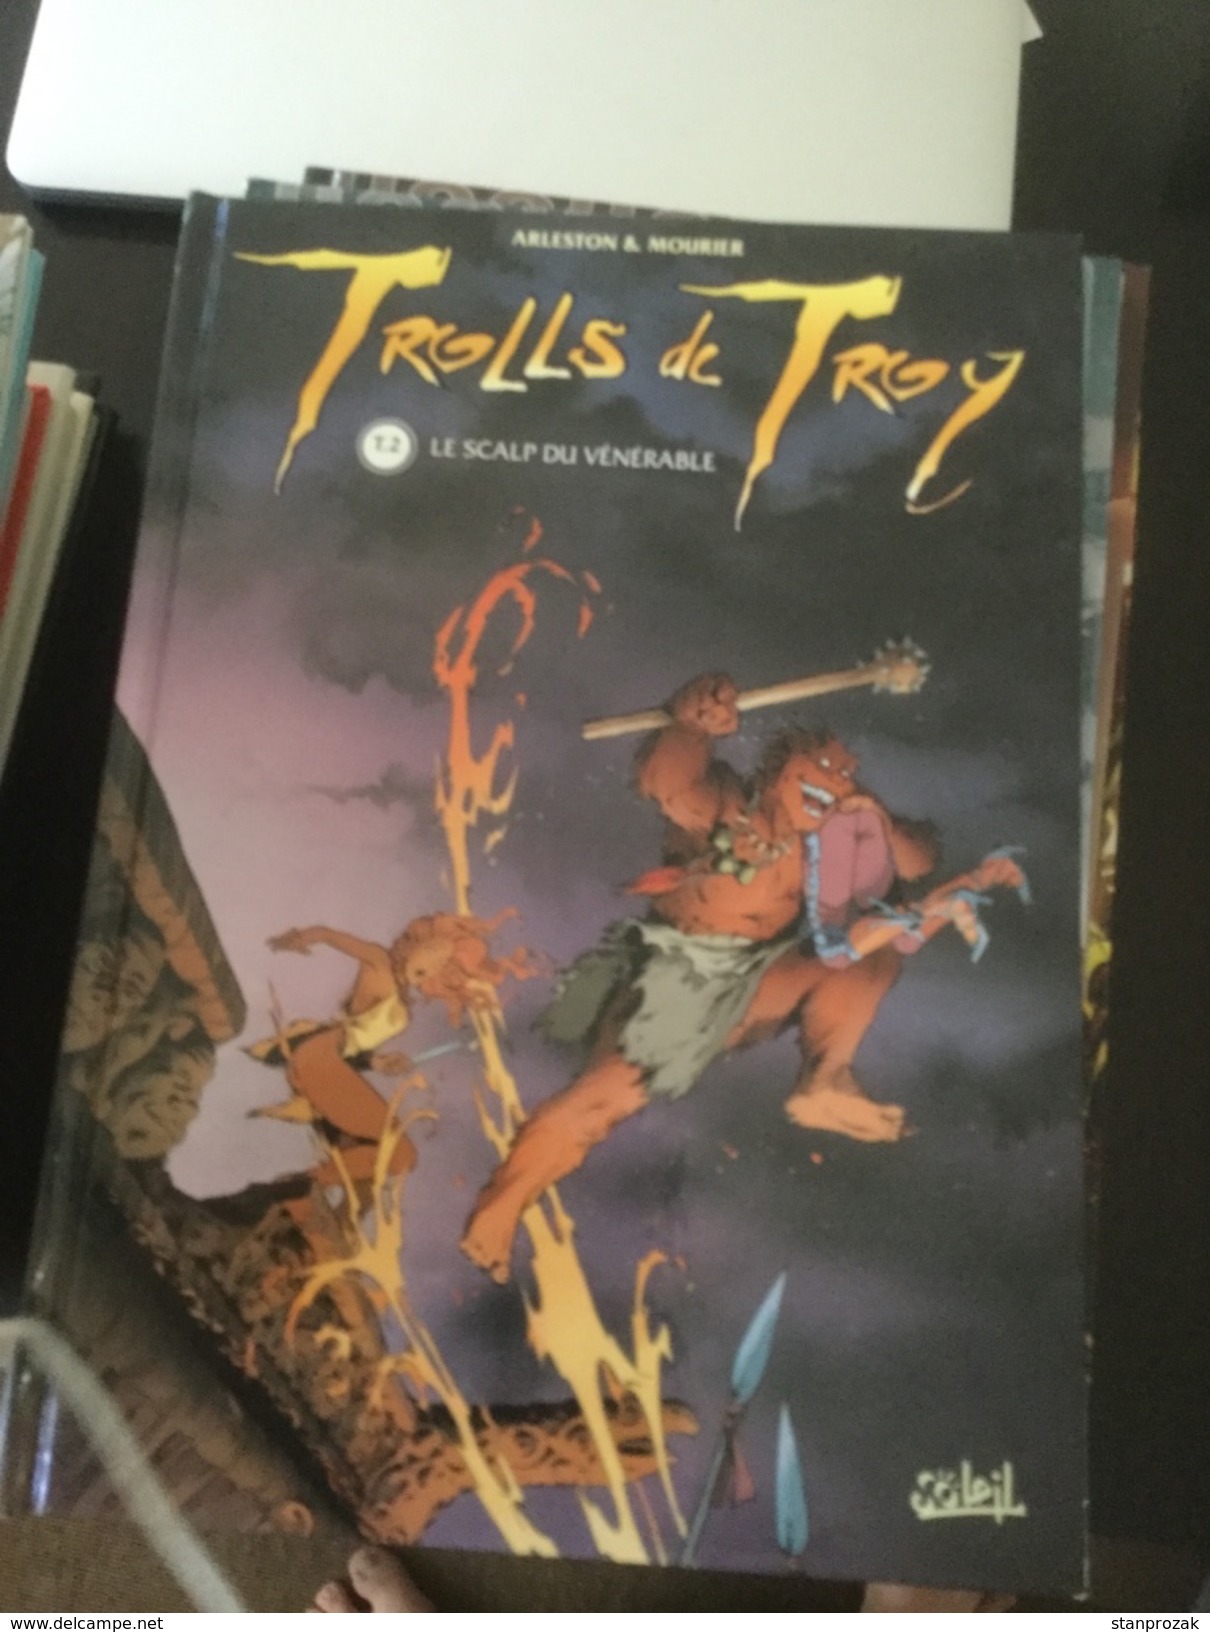 Trolls De Troy : Le Scalp Du Vénérable - Trolls De Troy